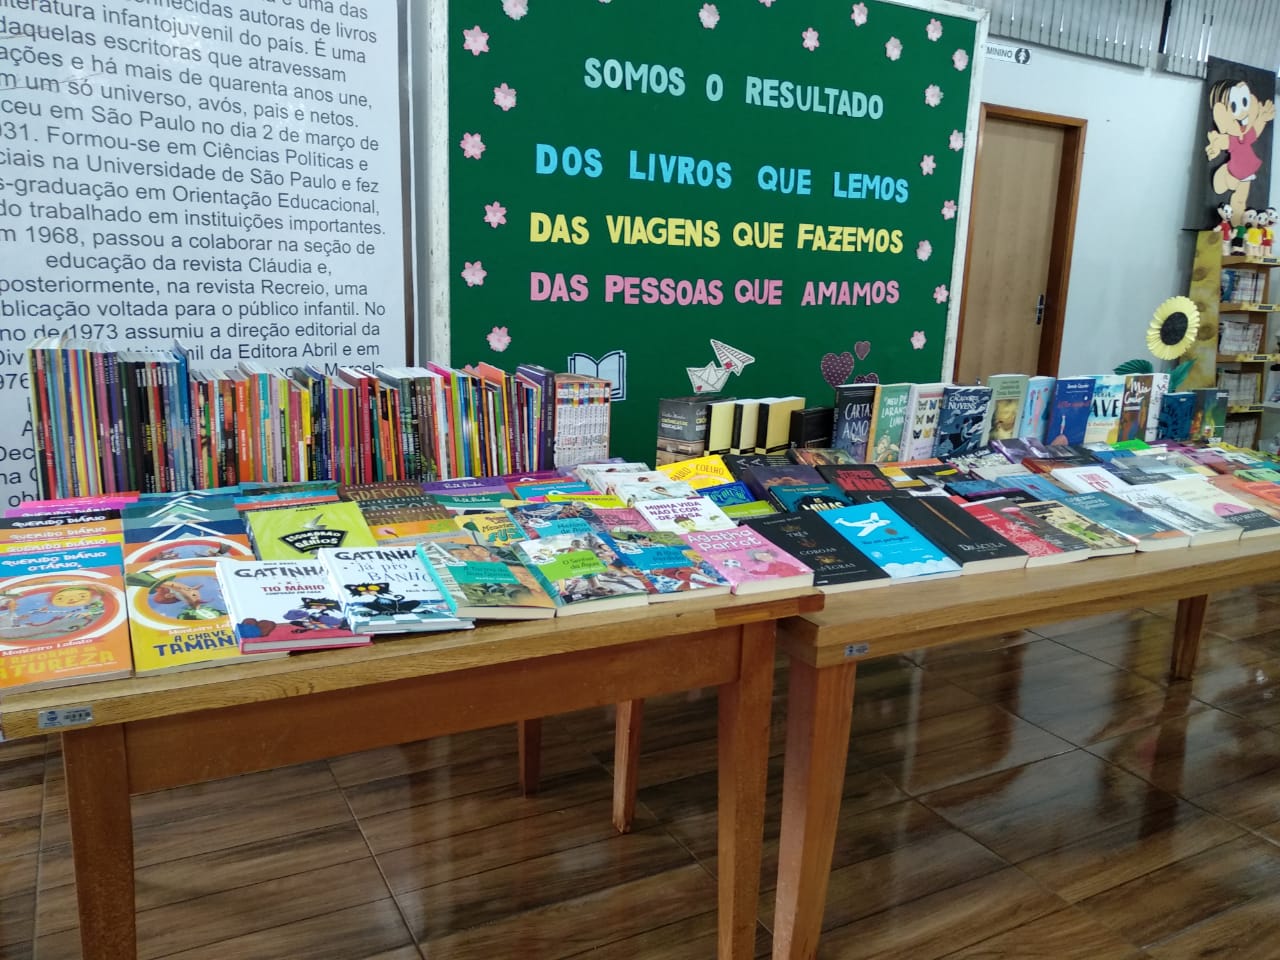 PALOTINA Administração investe na aquisição de livros para a Biblioteca Municipal